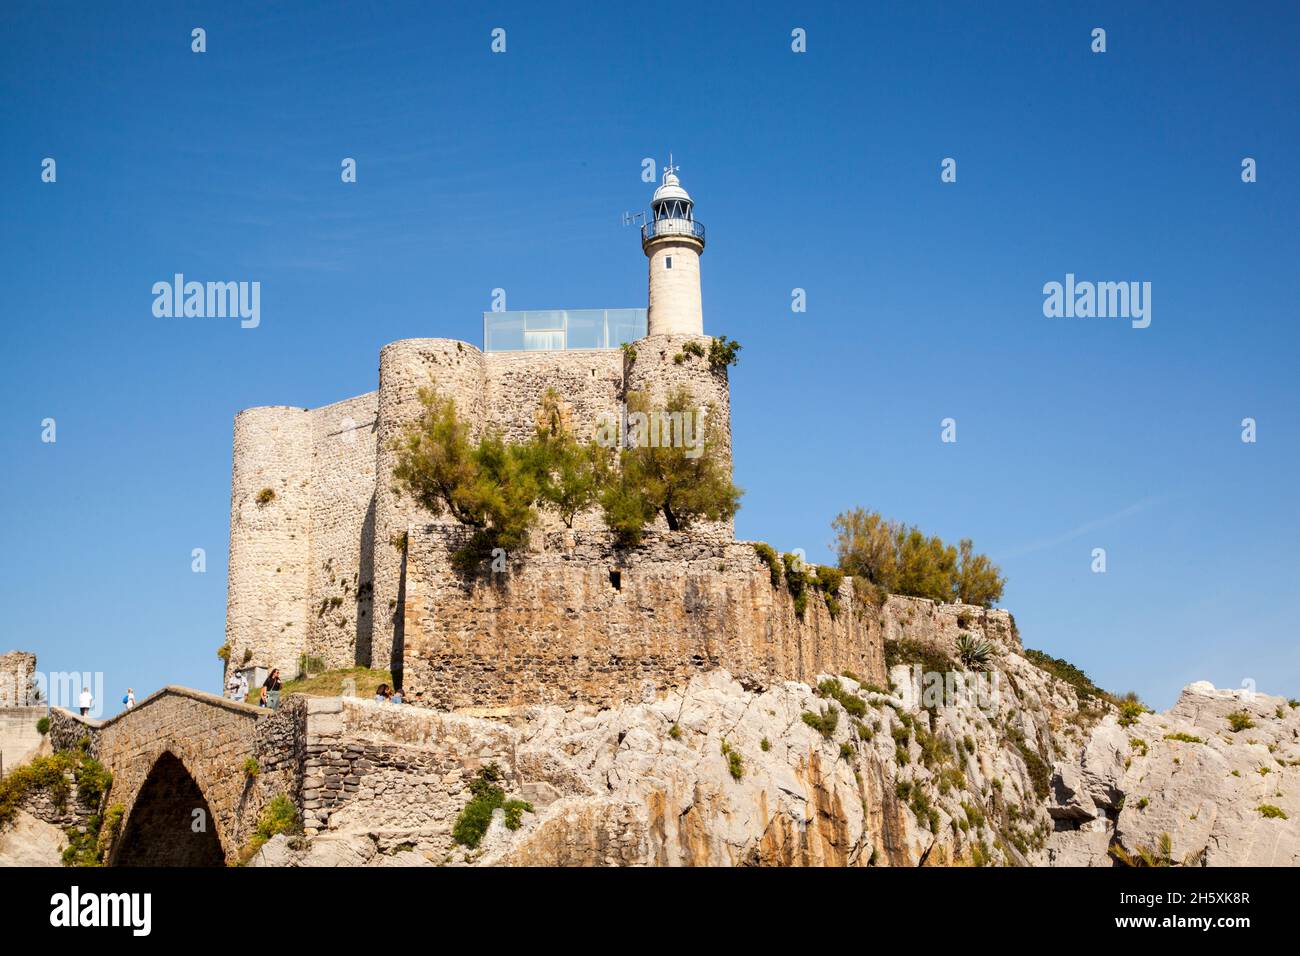 El castillo medieval de Santa Ana ahora alberga el faro en el puerto pesquero español y la localidad costera de Castro Urdiales Norte de España Foto de stock